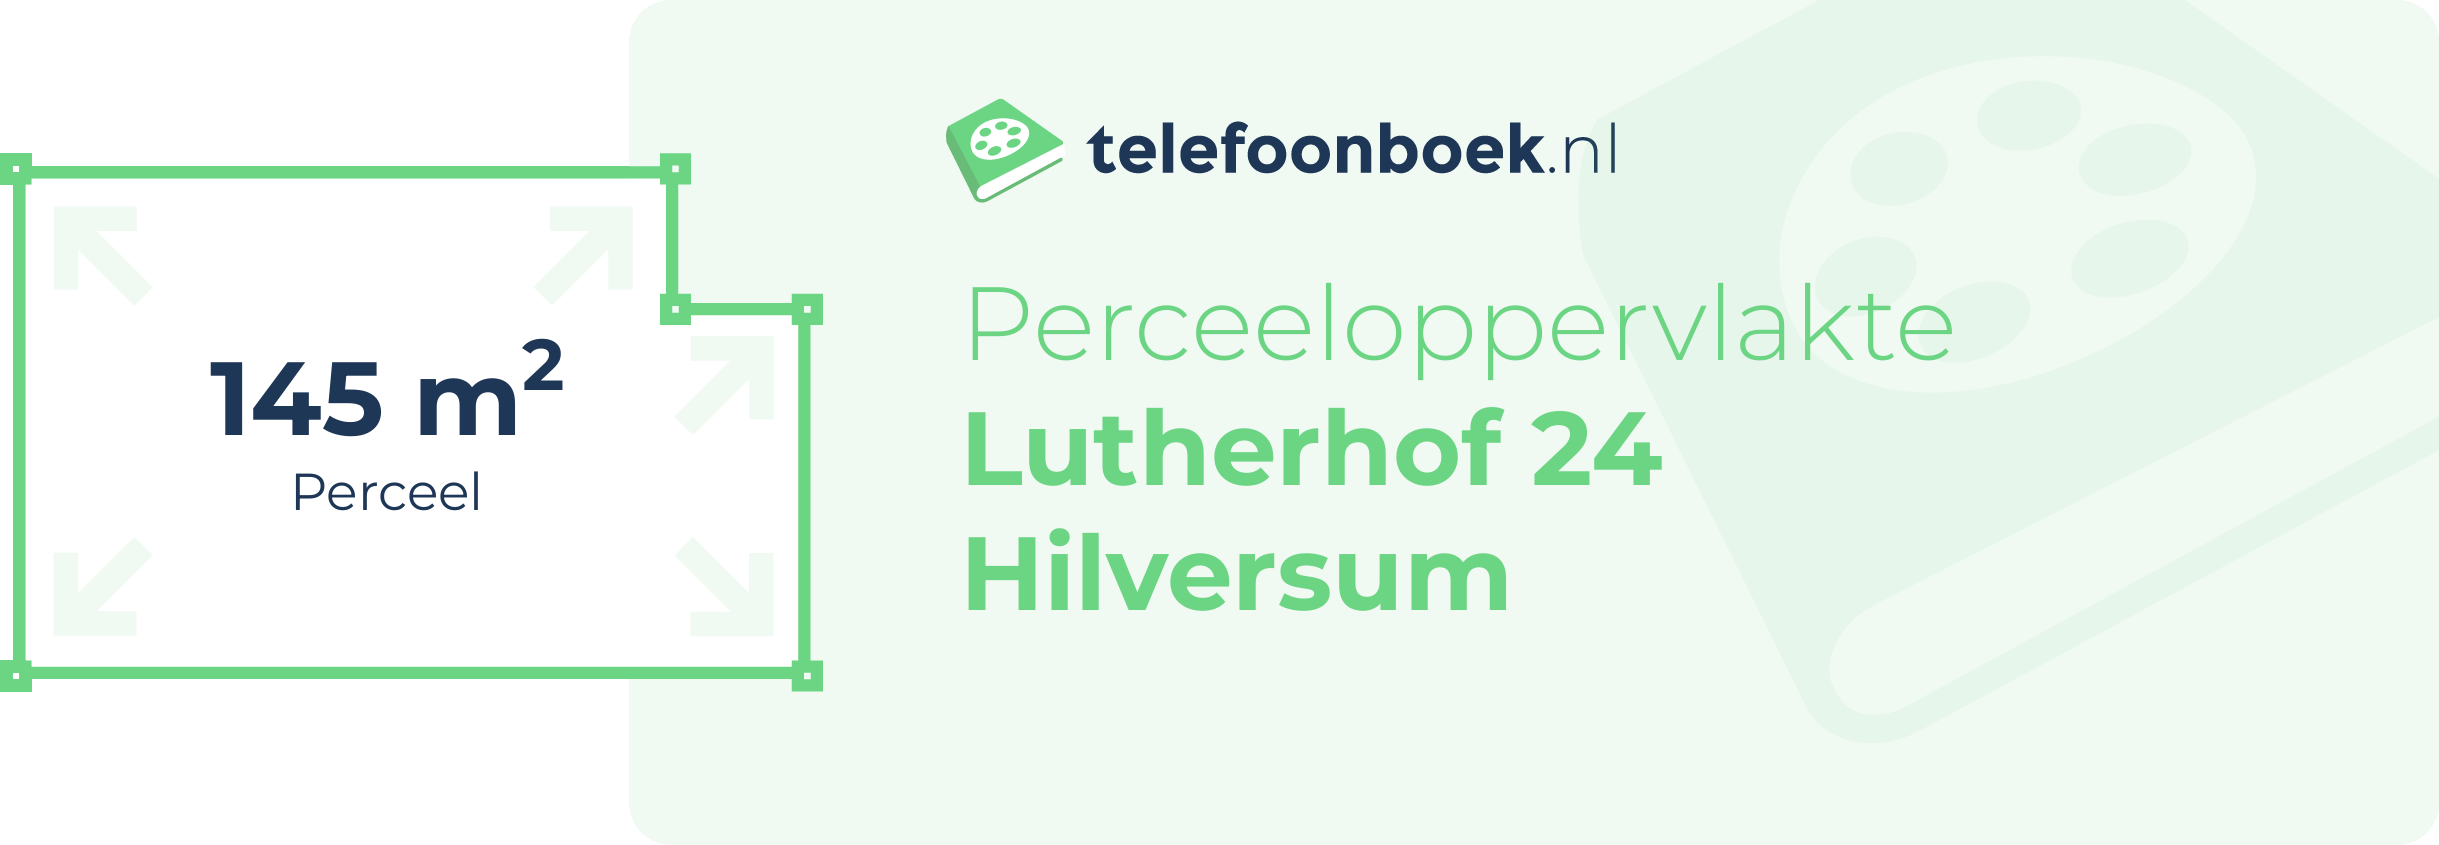 Perceeloppervlakte Lutherhof 24 Hilversum